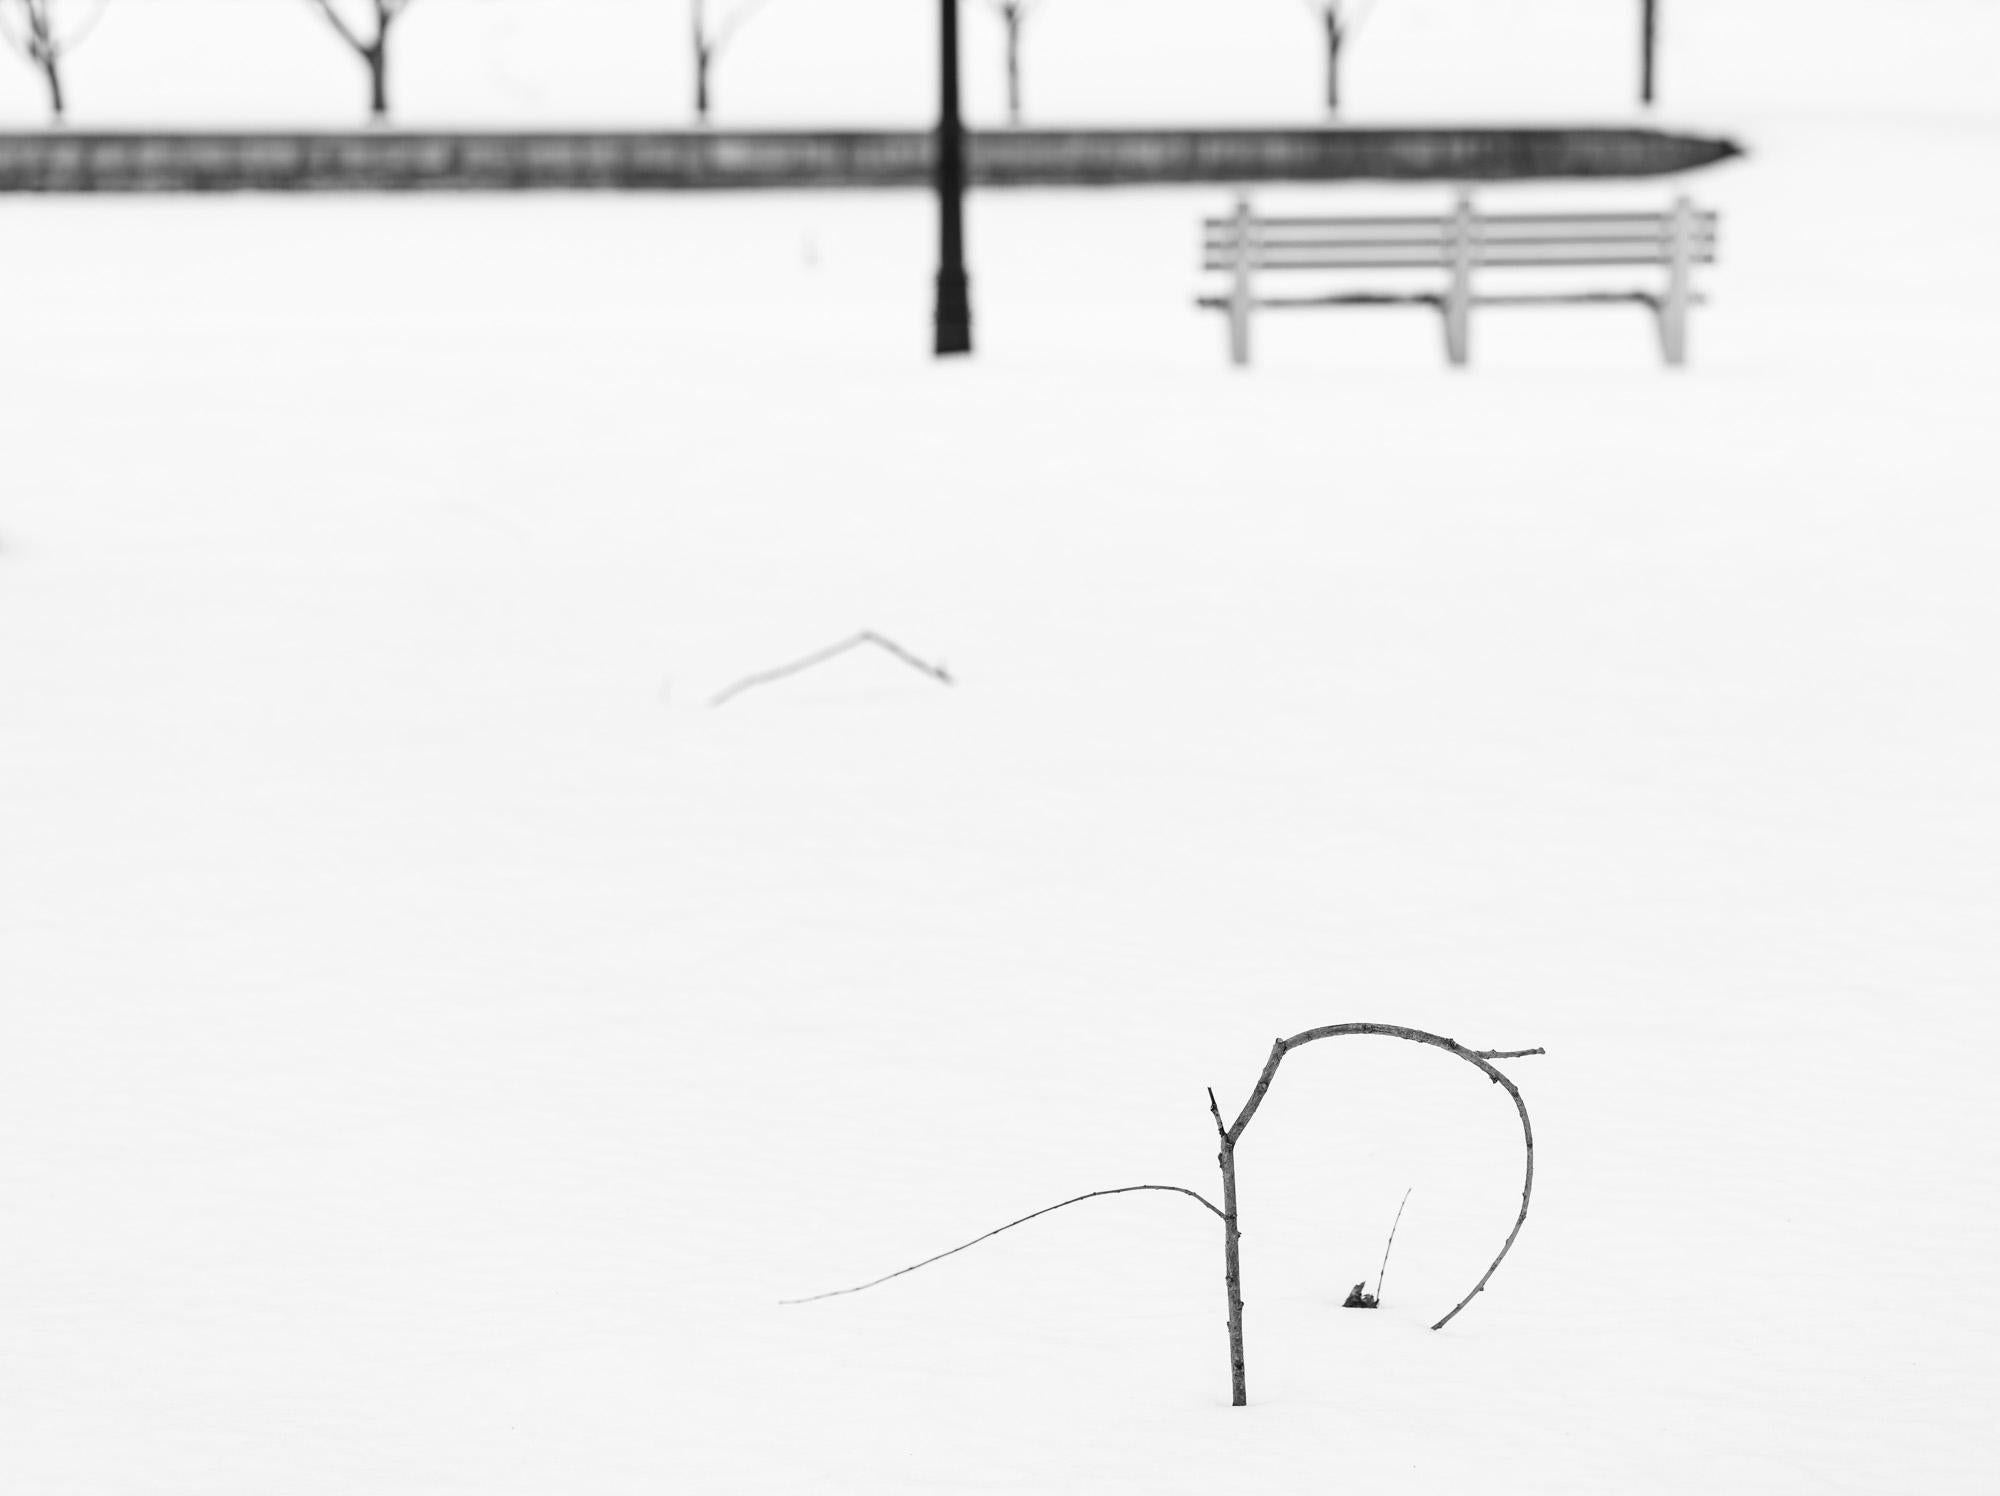 Black and White Photograph Howard Lewis - Photographie en noir et blanc à tirage limité 2021 « Winter Lines »